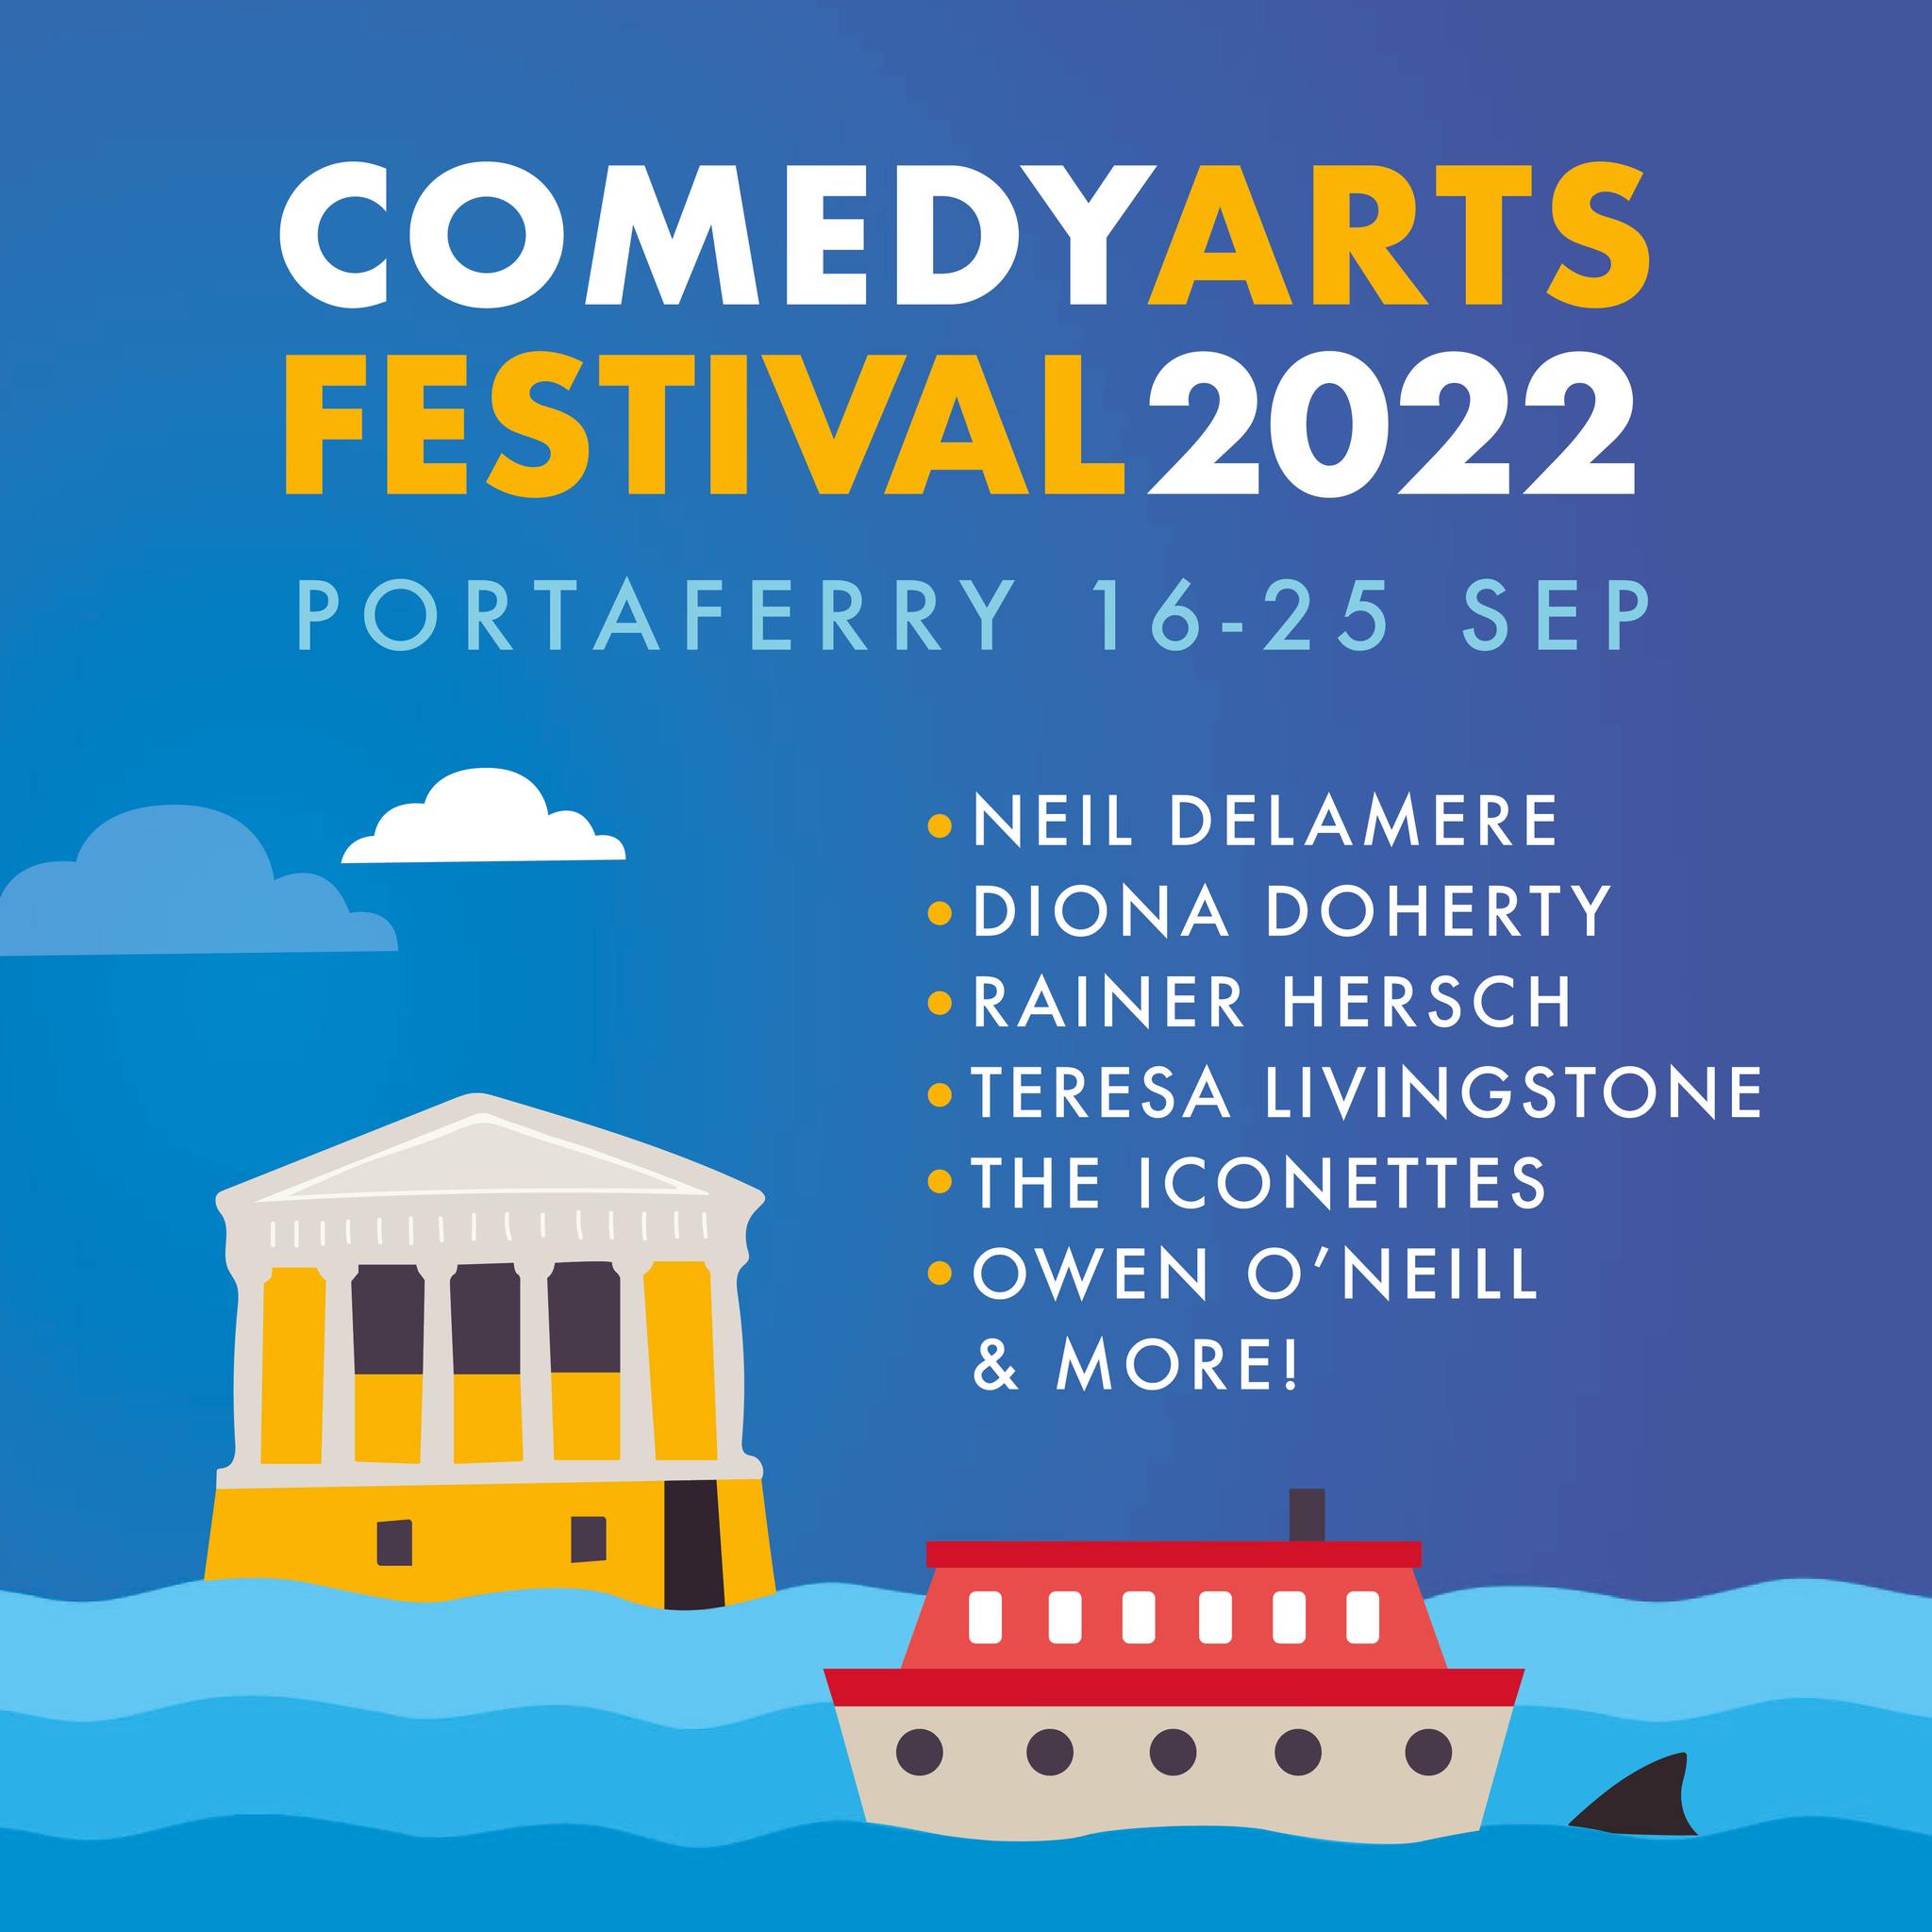 Portaferry Comedy Arts Festival 2022